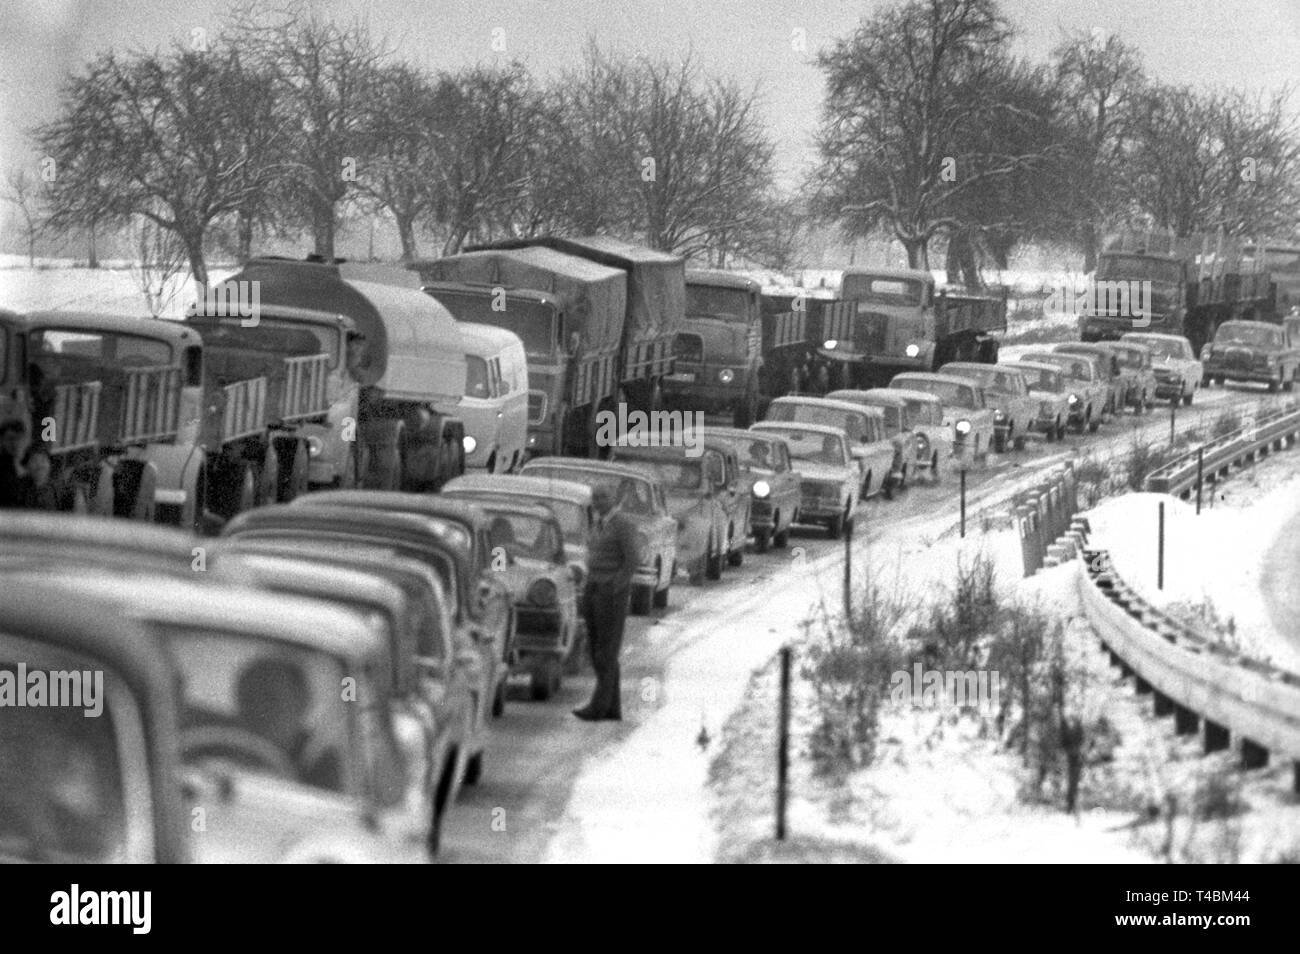 En raison de la brusque chute de neige peu avant Noël, les embouteillages se produisent sur l'autoroute entre Karlsruhe et Pforzheim (photo d'archive du 14 décembre 1963). Dans le monde d'utilisation | Banque D'Images